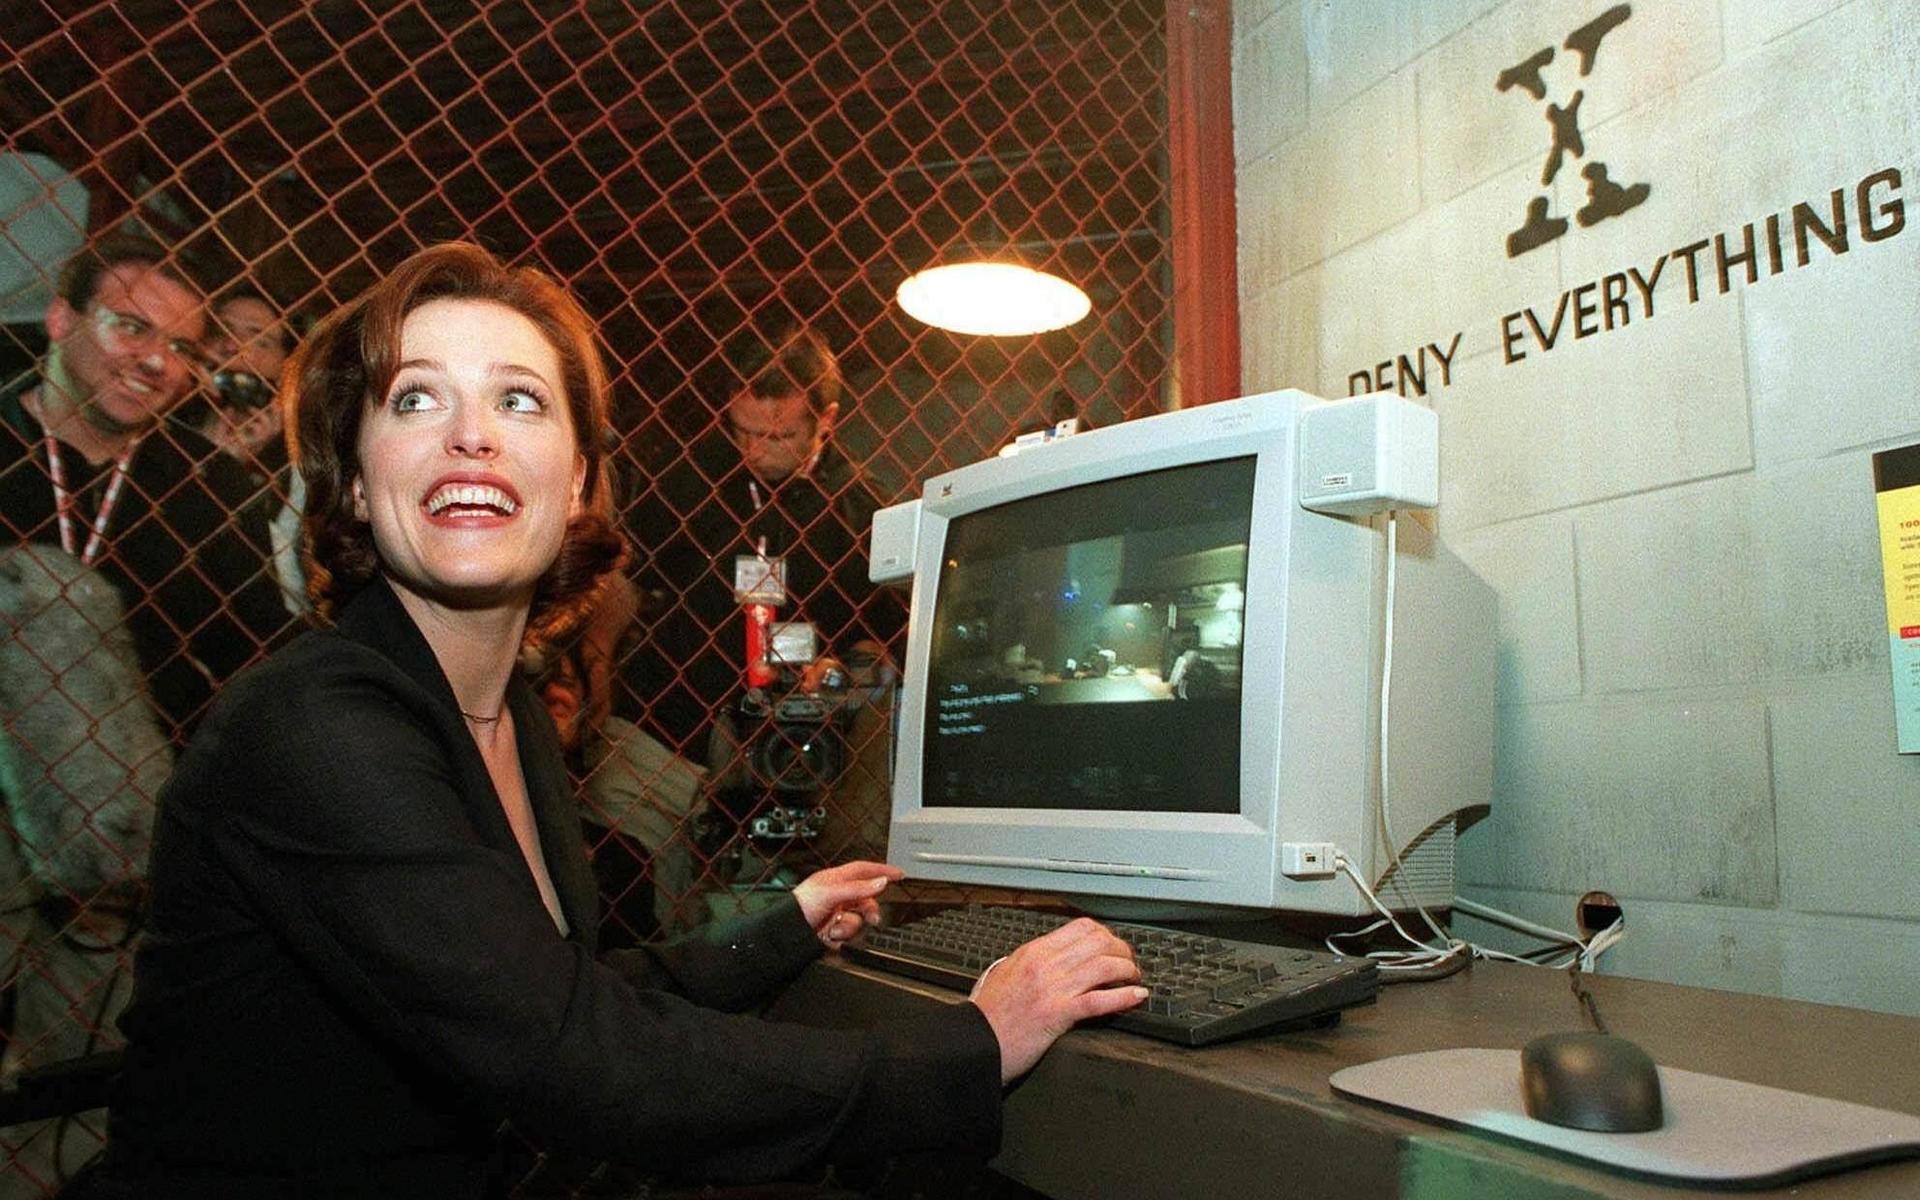 Utan populärparanoida tv-serier som ”The X-files” skulle världen vara tråkigare. Skådespelaren Gillian Anderson spelade den skeptiska Dana Scully i den ikoniska 90-talserien. 